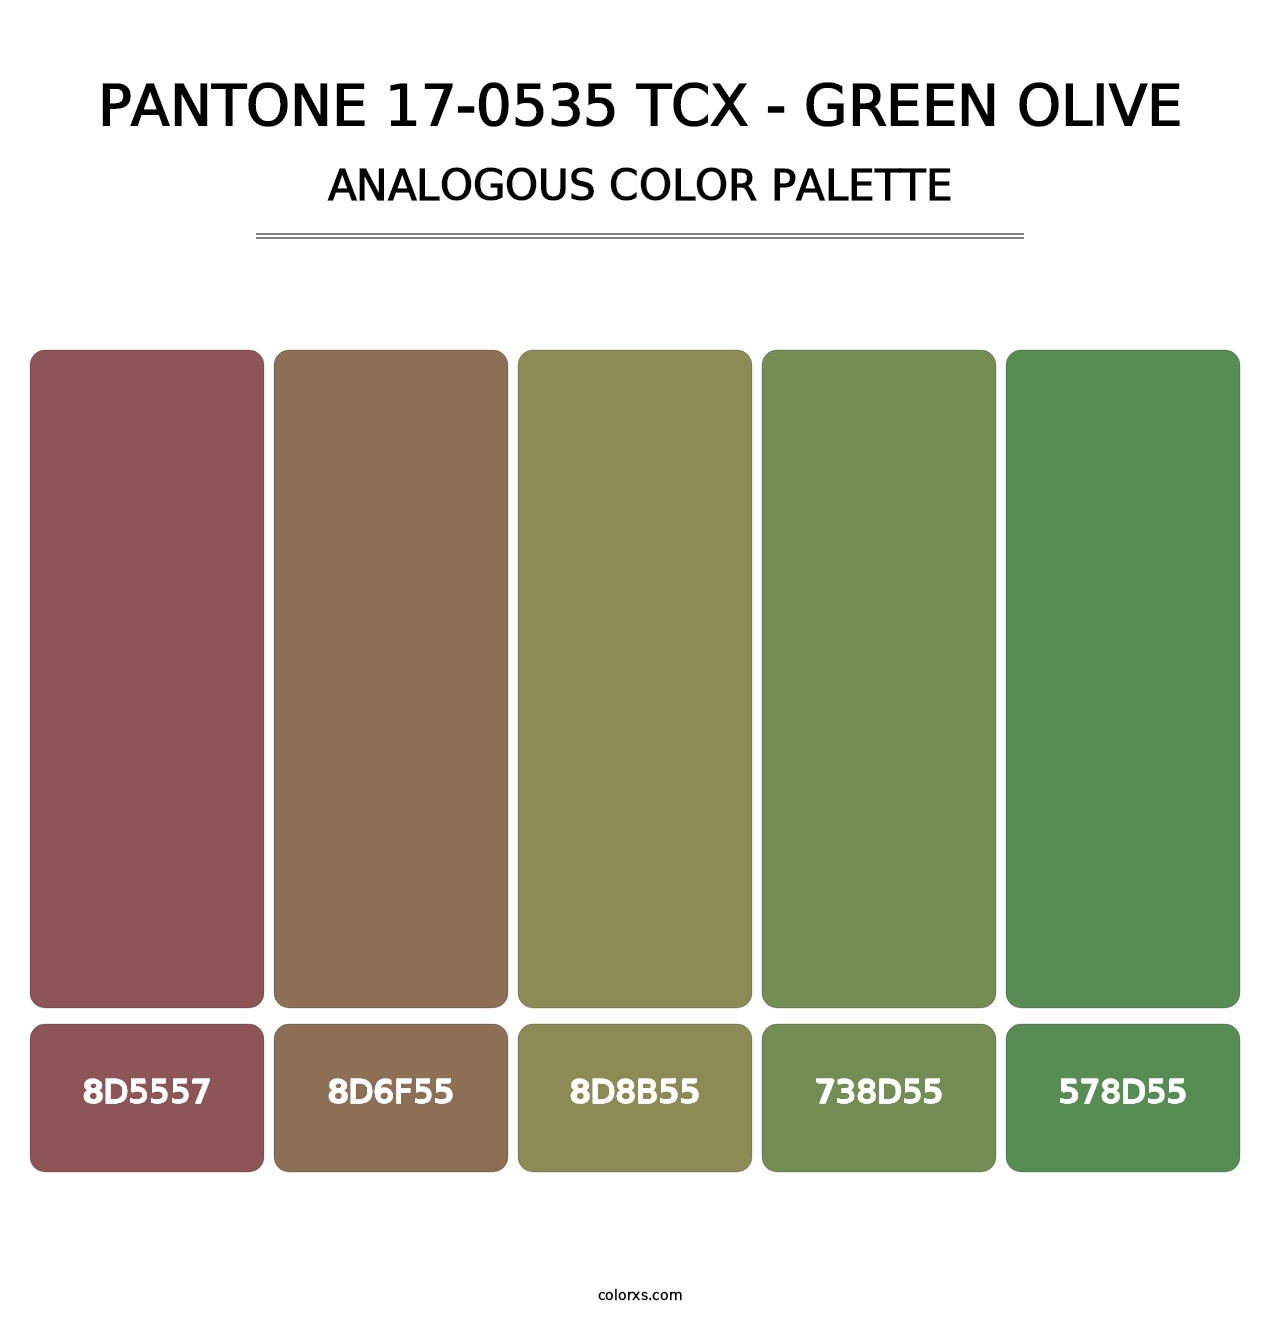 PANTONE 17-0535 TCX - Green Olive - Analogous Color Palette